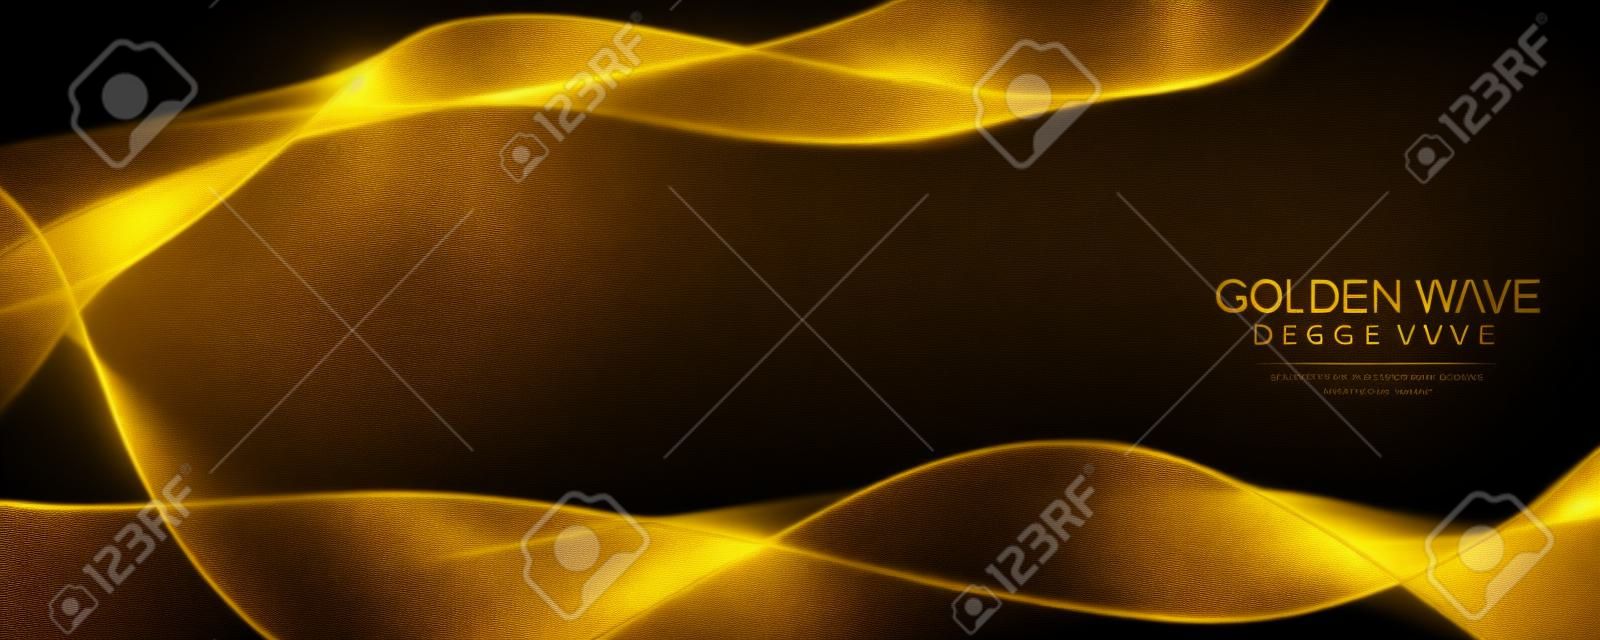 Design de ondas douradas de luxo no fundo preto